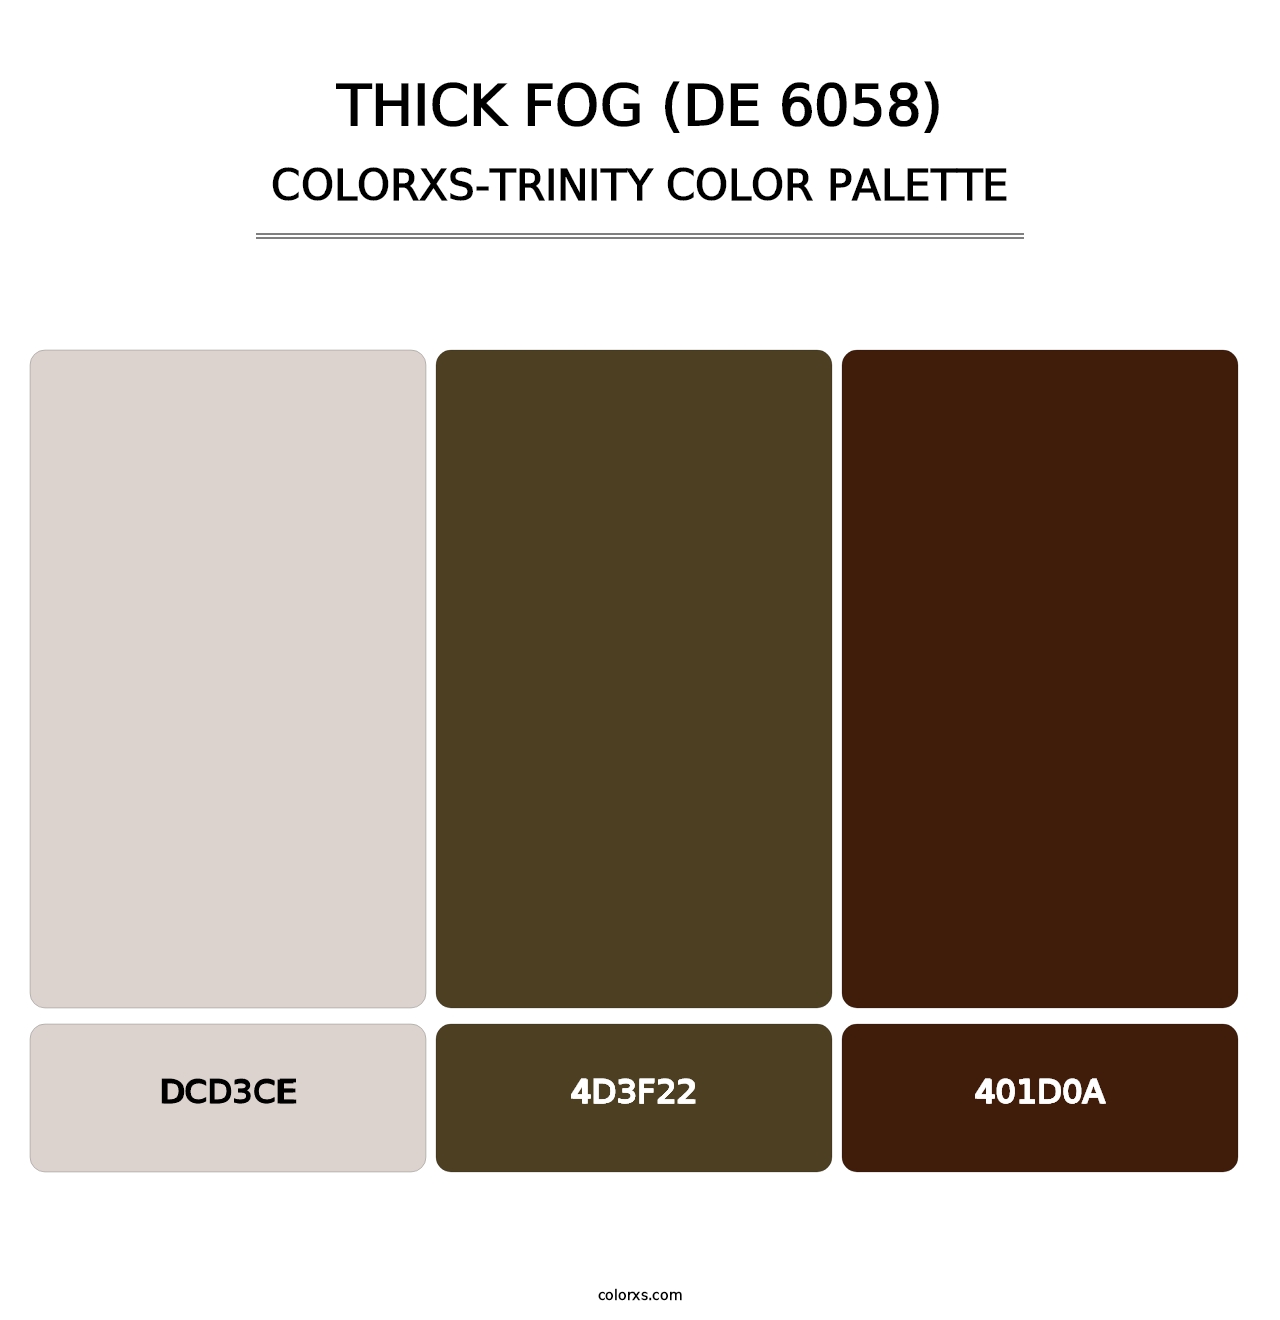 Thick Fog (DE 6058) - Colorxs Trinity Palette